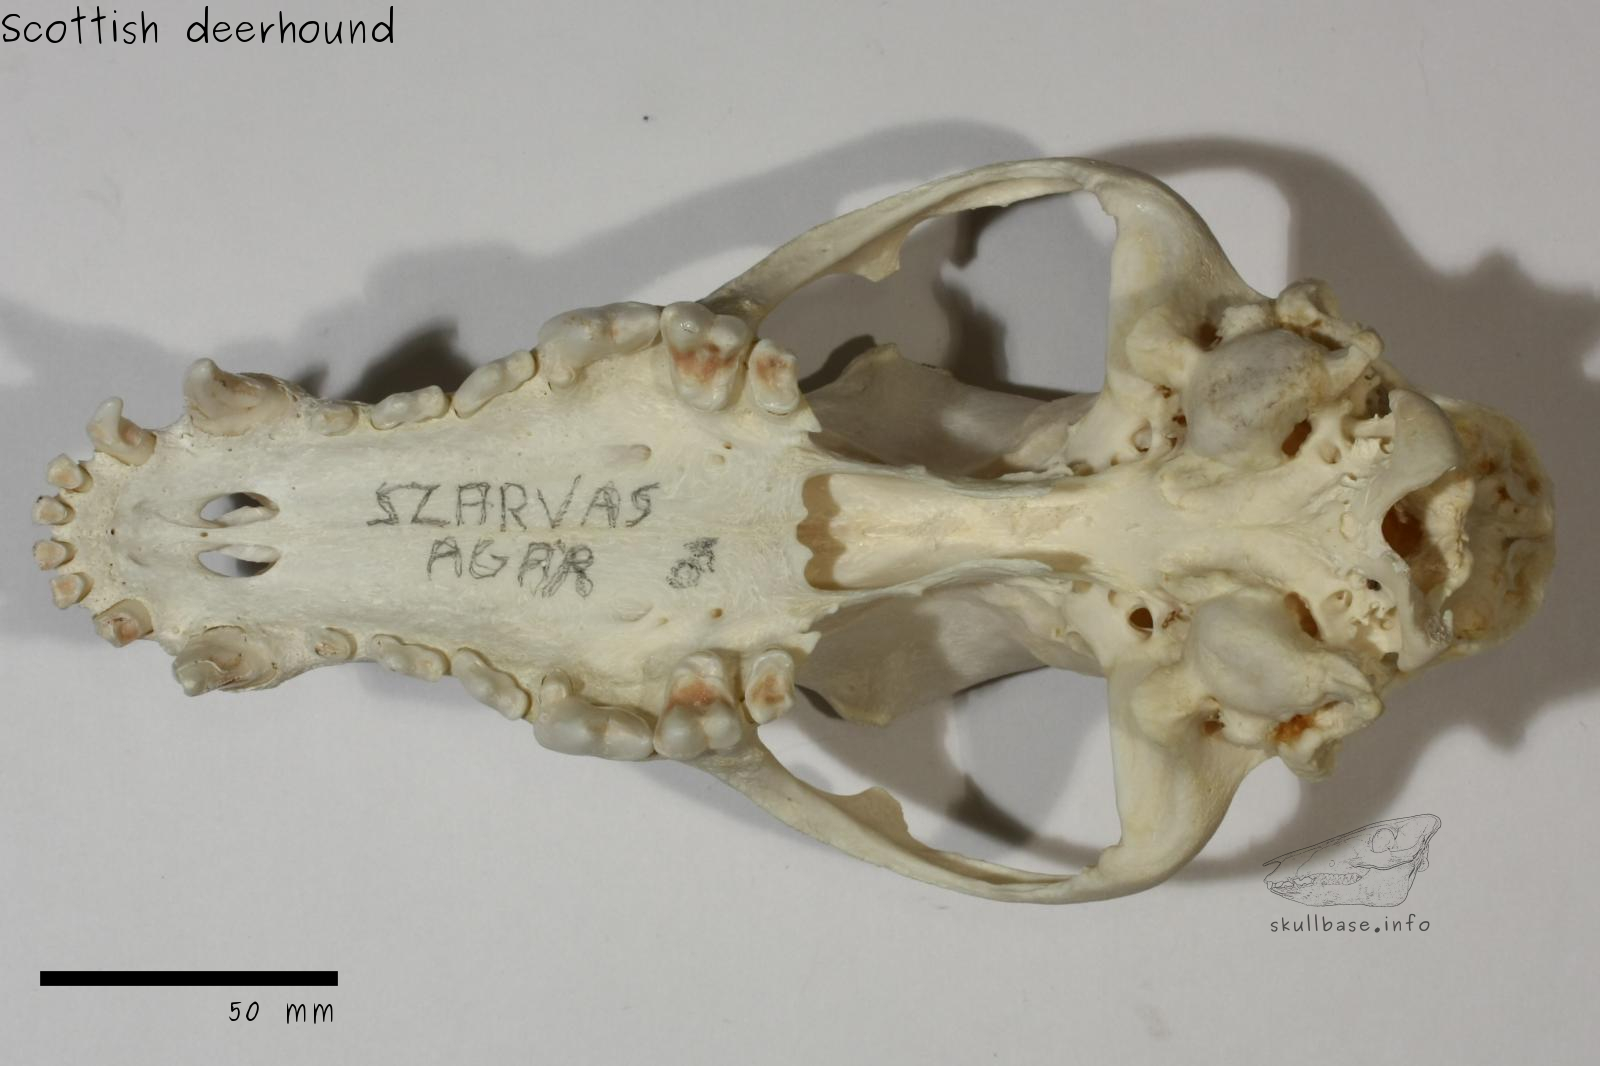 Scottish deerhound (Canis lupus familiaris) skull ventral view